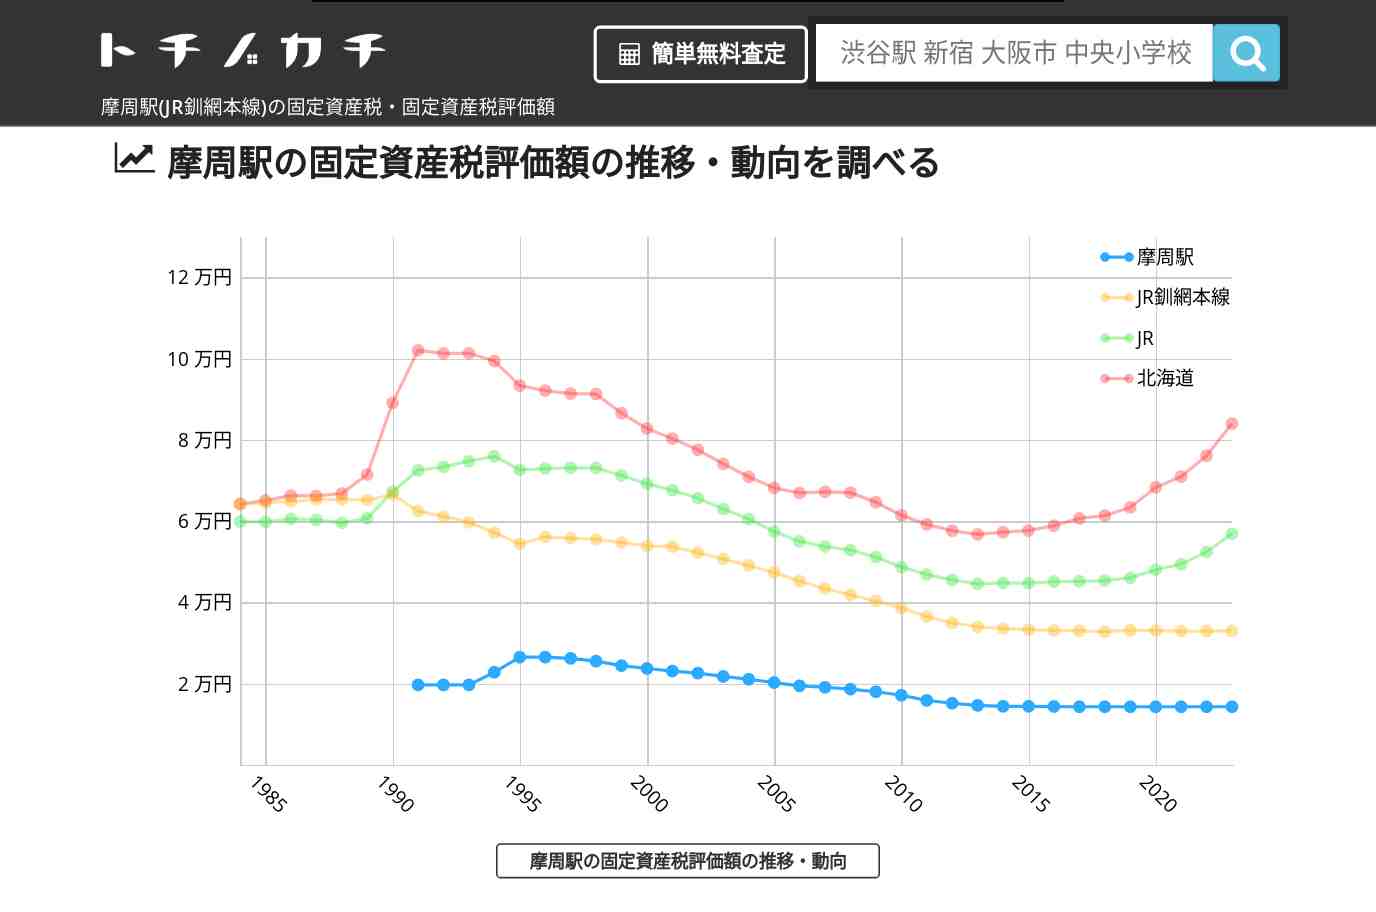 摩周駅(JR釧網本線)の固定資産税・固定資産税評価額 | トチノカチ